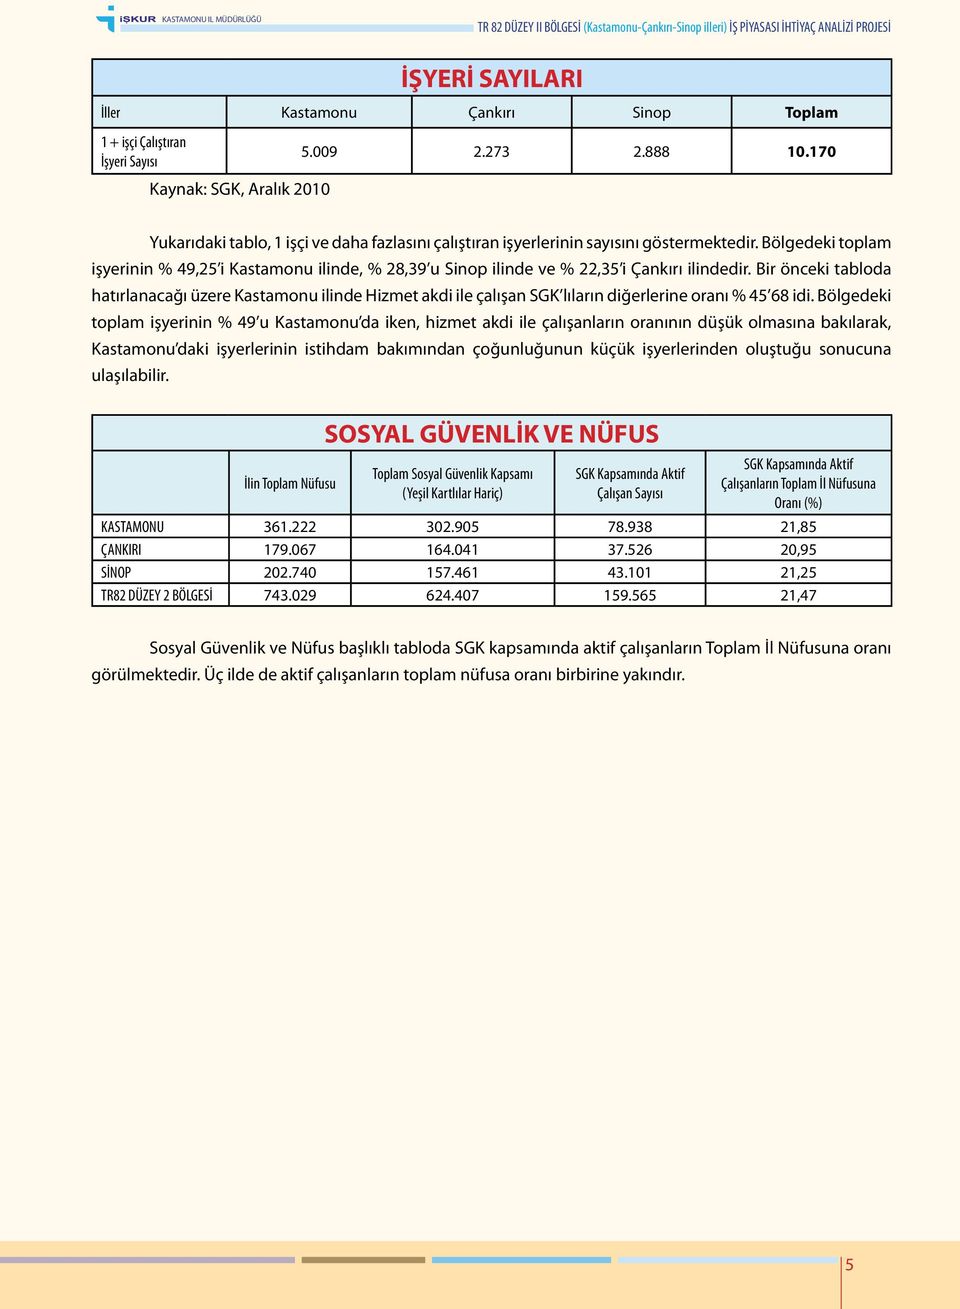 Bölgedeki toplam işyerinin % 49,25 i Kastamonu ilinde, % 28,39 u Sinop ilinde ve % 22,35 i Çankırı ilindedir.